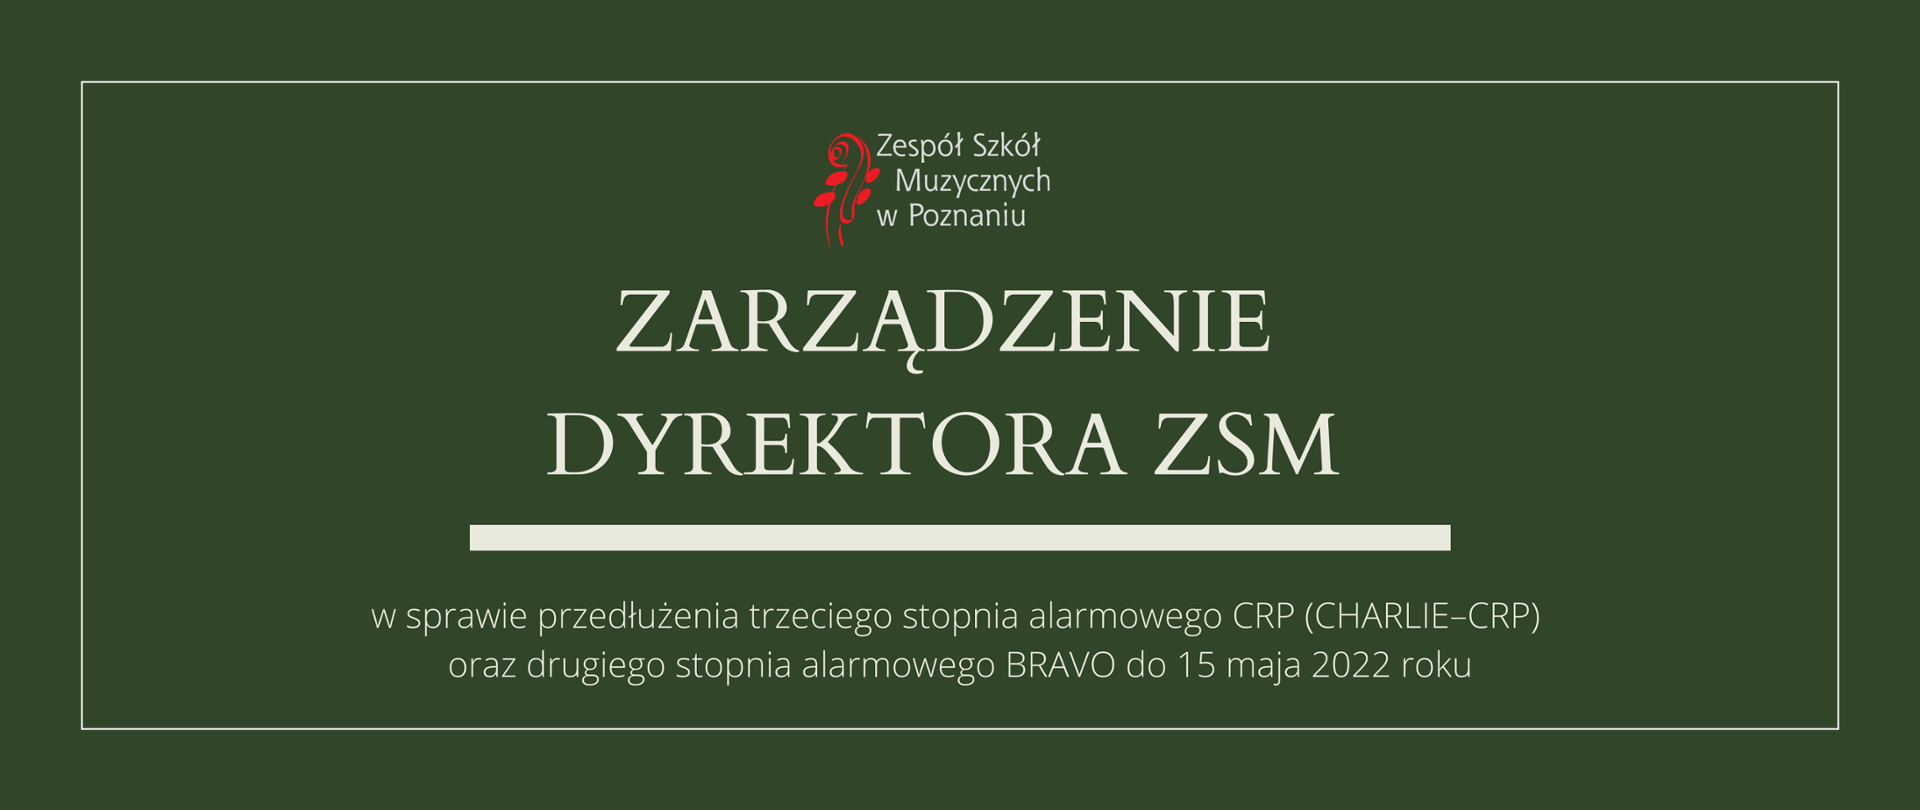 Zielona grafika z logo ZSM i tekstem /"ZARZĄDZENIE DYREKTORA ZSM"/ poniżej biała gruba linia, niżej tekst /"w sprawie przedłużenia trzeciego stopnia alarmowego CRP (CHARLIE–CRP) oraz drugiego stopnia alarmowego BRAVO do 15 maja 2022"/